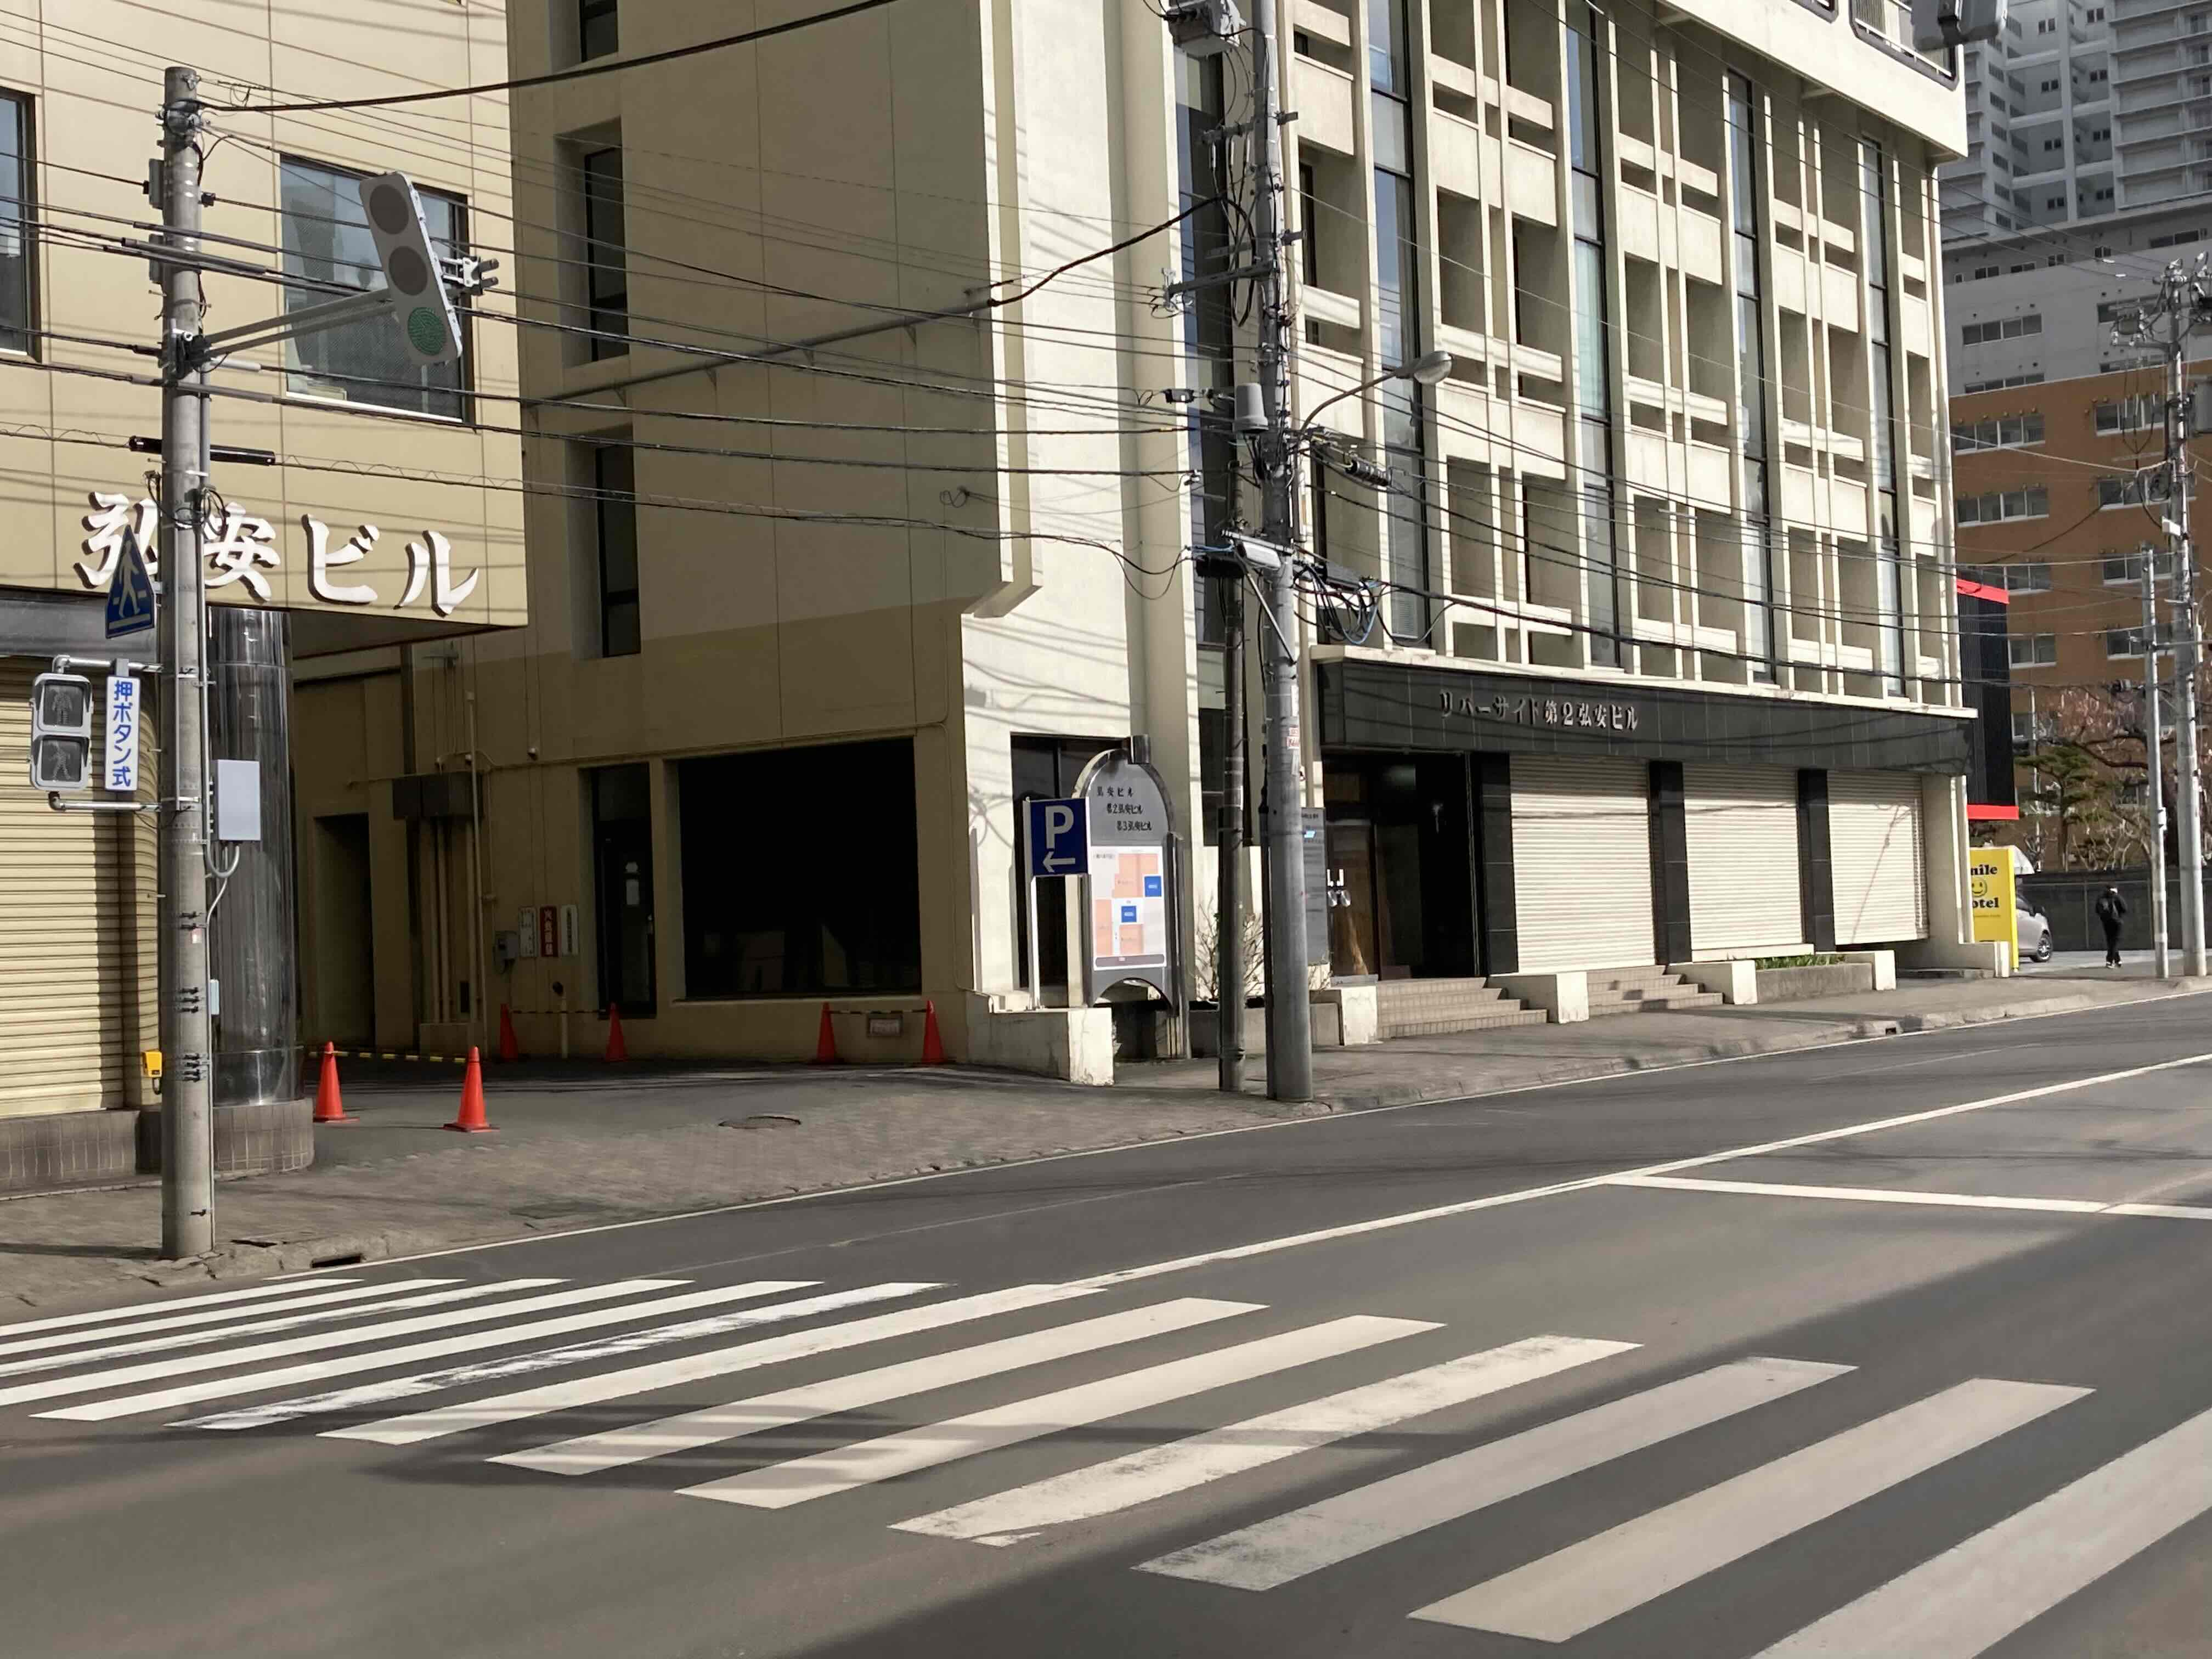 ⑥道路の向こう側に弘安ビルがございます。この横断歩道を渡ってください。